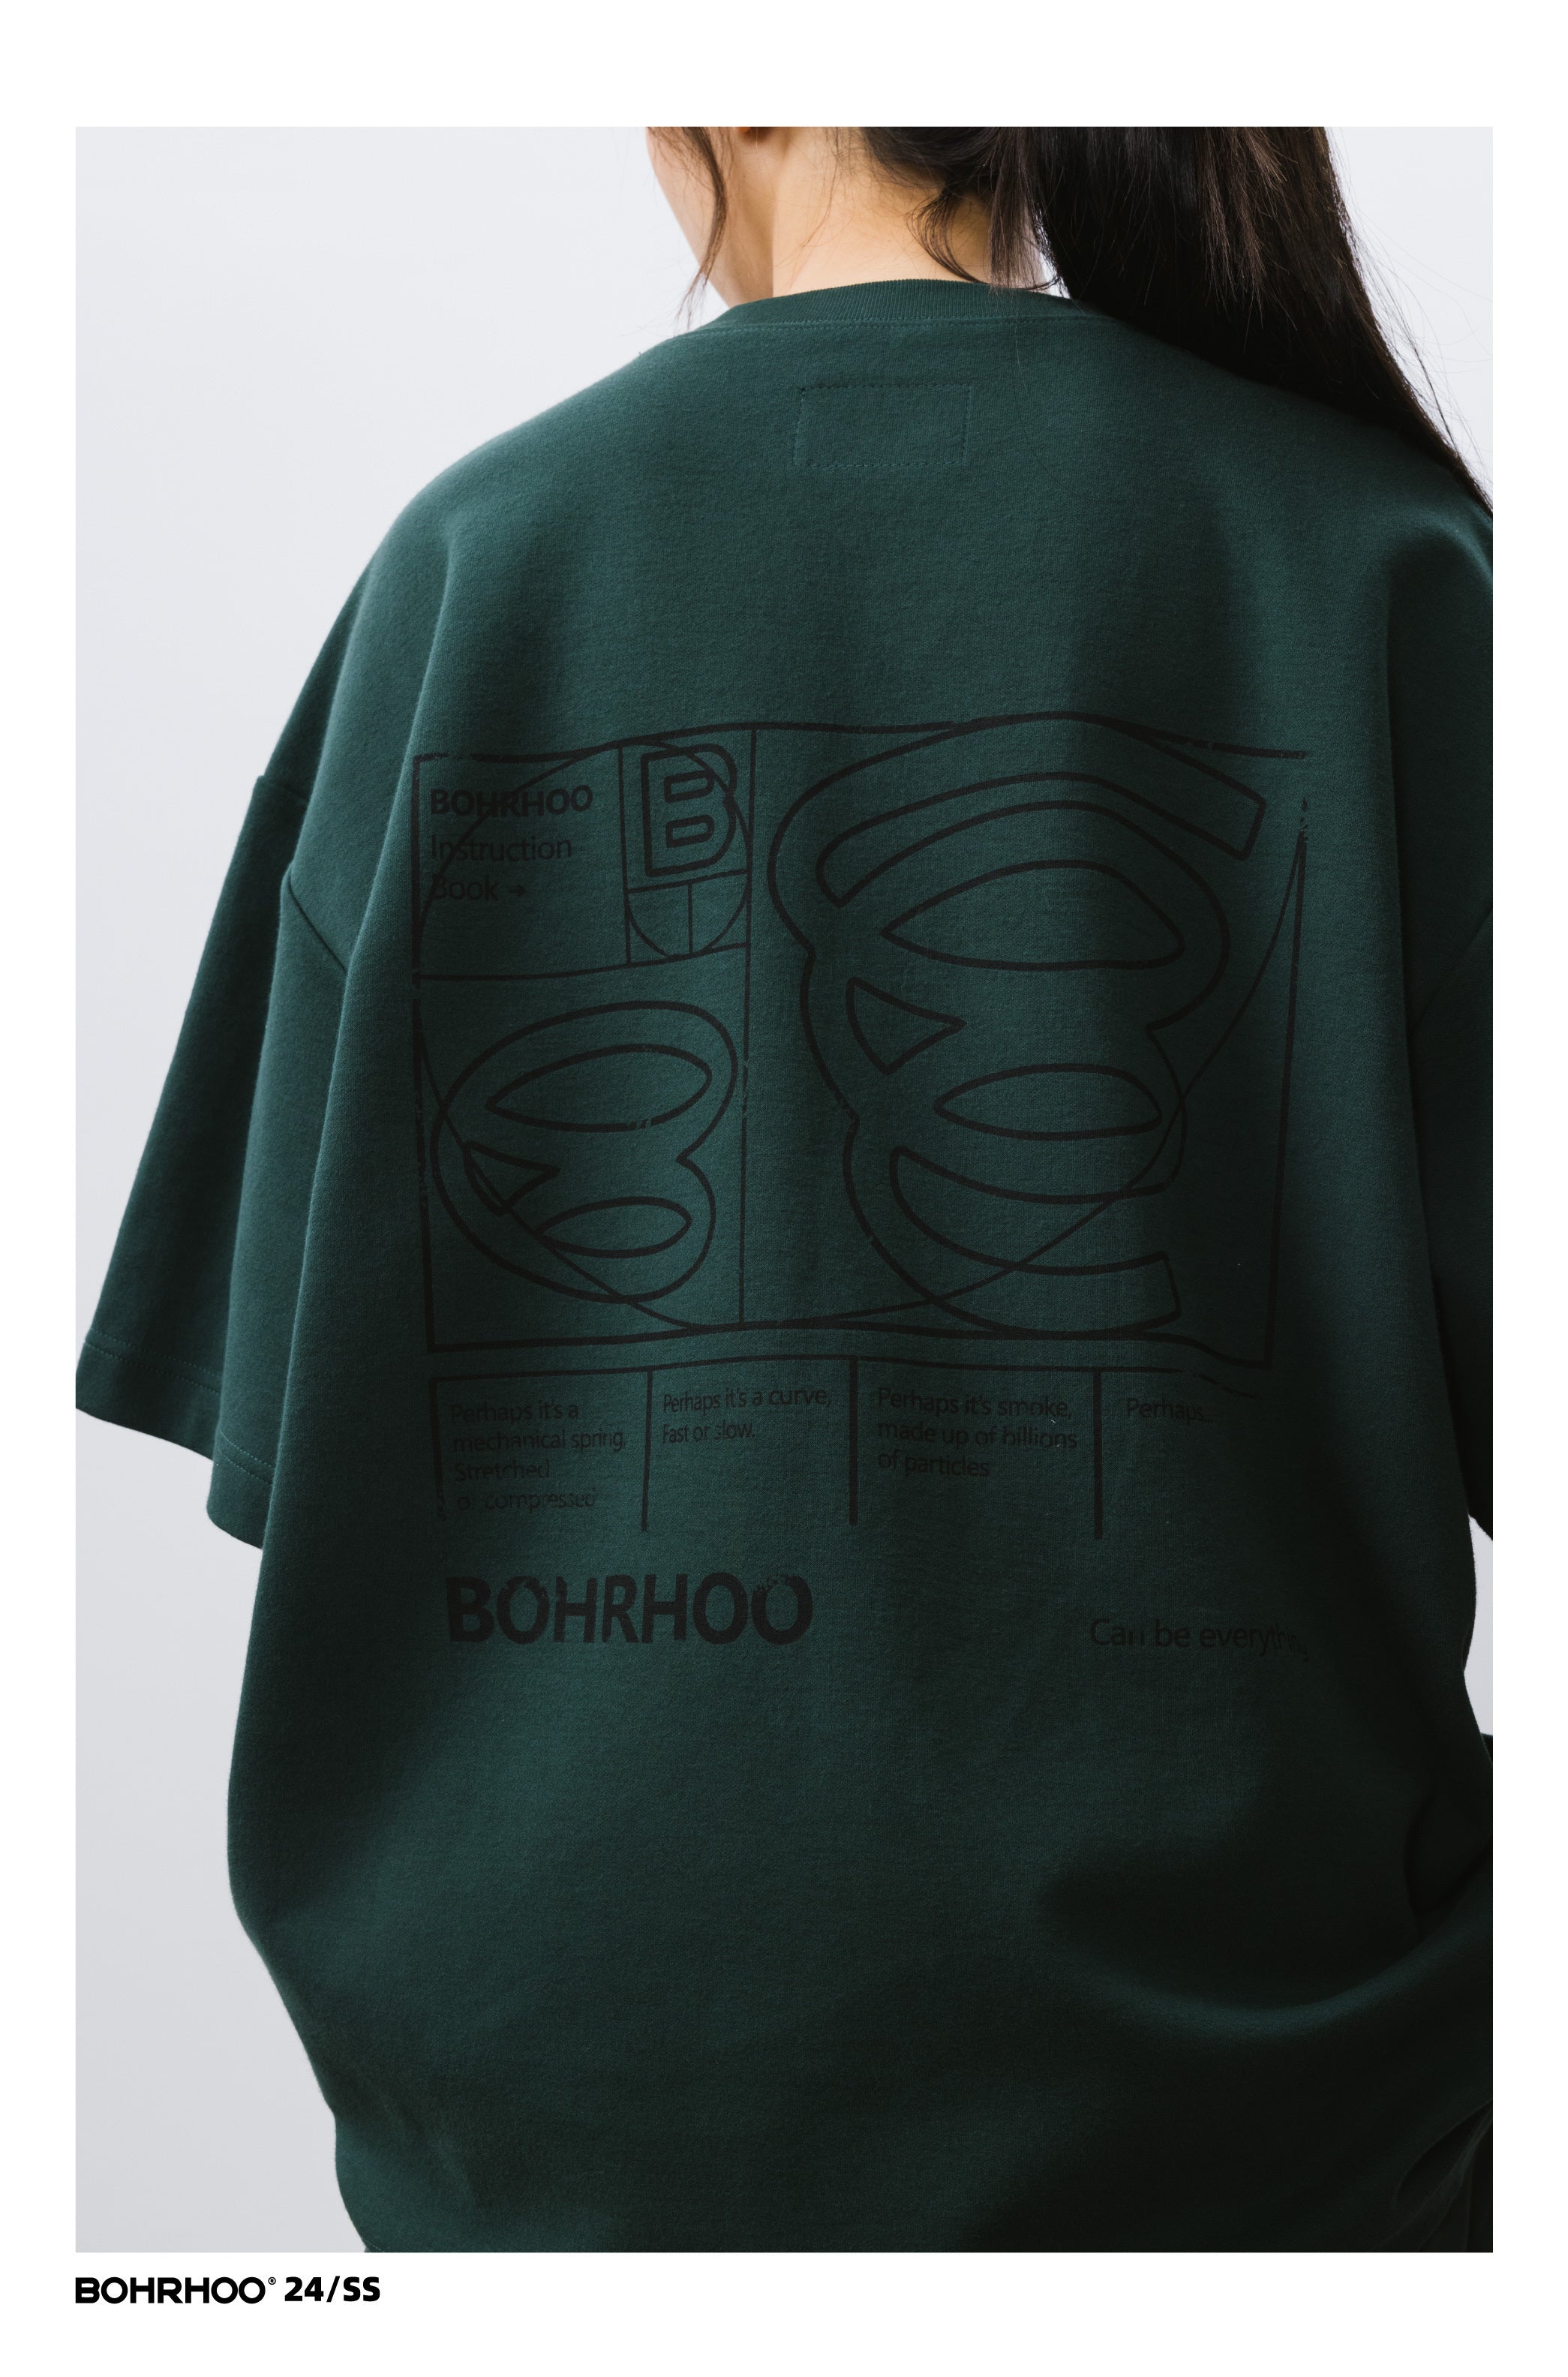 BOHRHOO ピュアコットンポケットレタープリントTシャツ BHH013